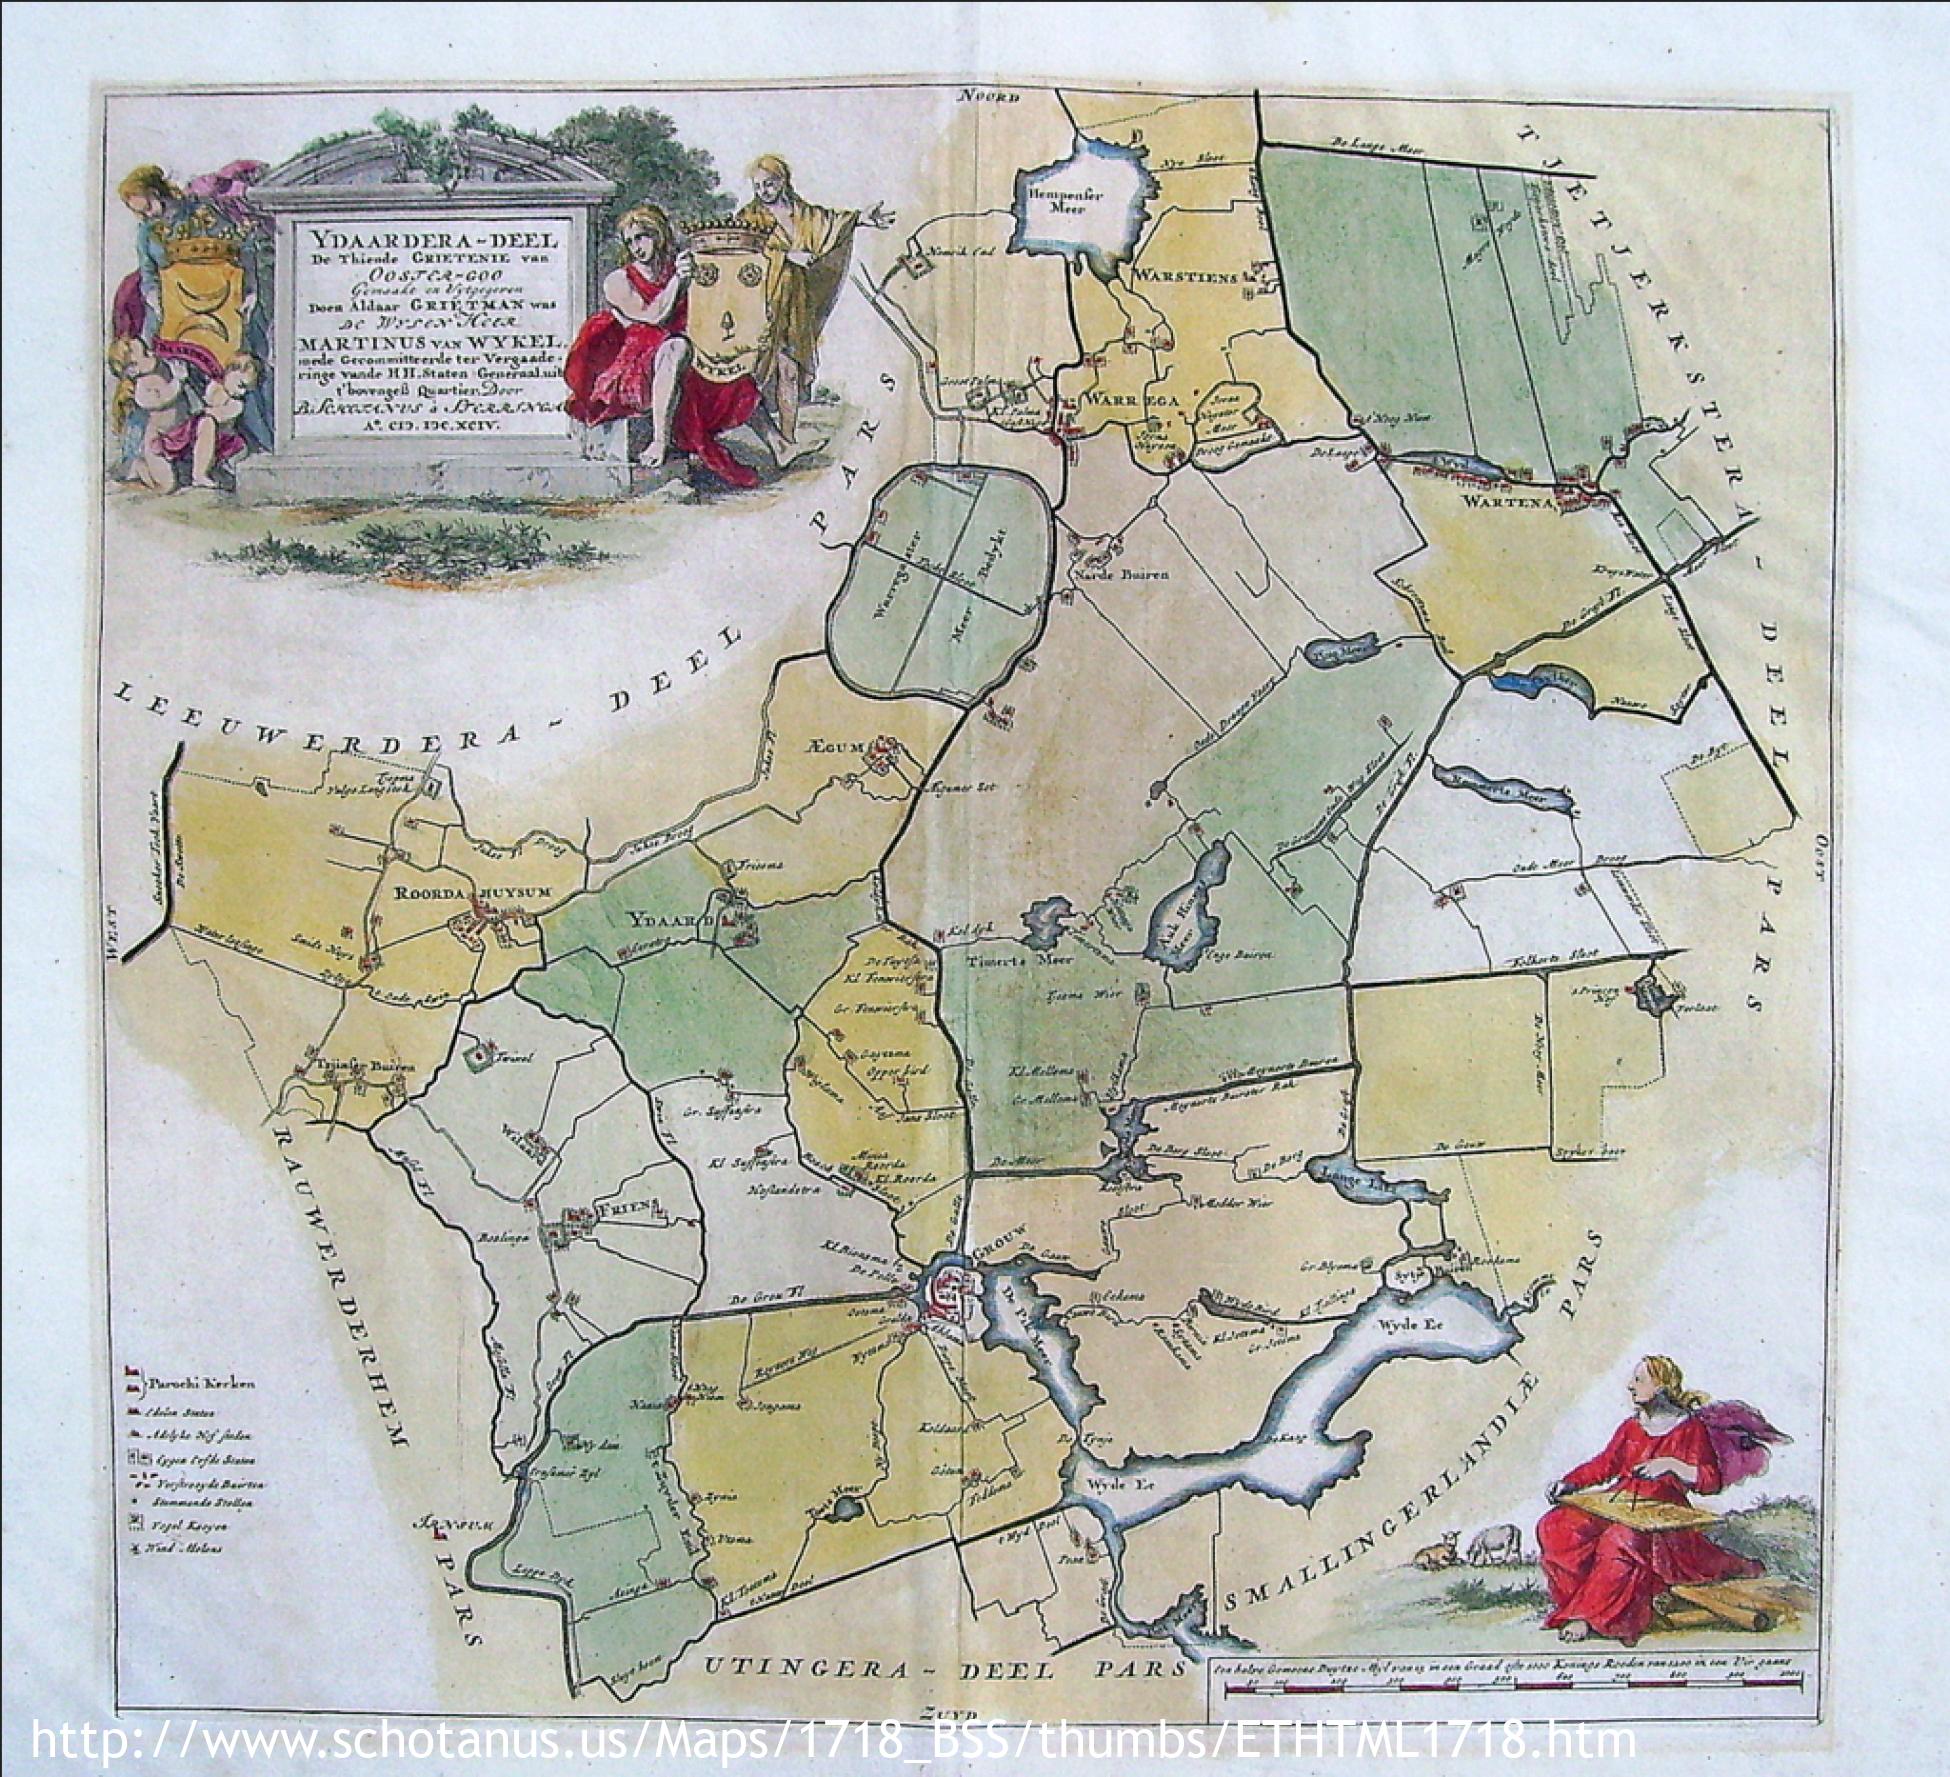 Wandelgebied (1718 Friese grietenij landkaarten van Bernardus Schotanus a Steringa)